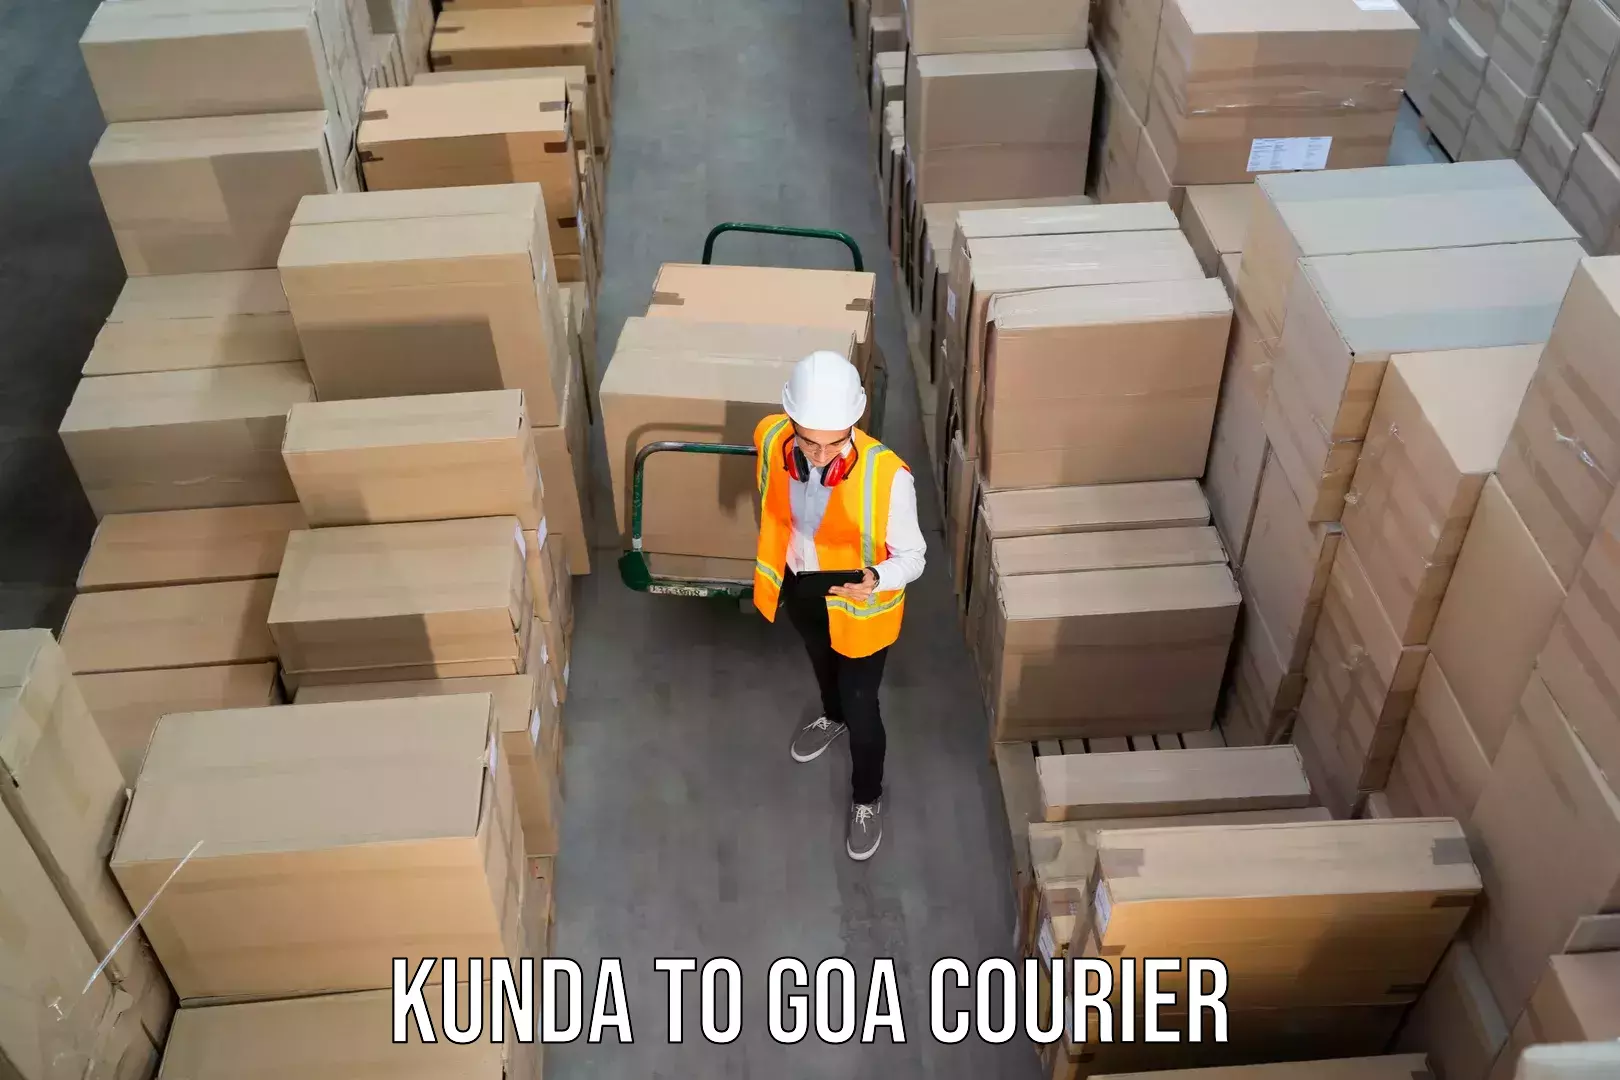 Professional courier services Kunda to Mormugao Port